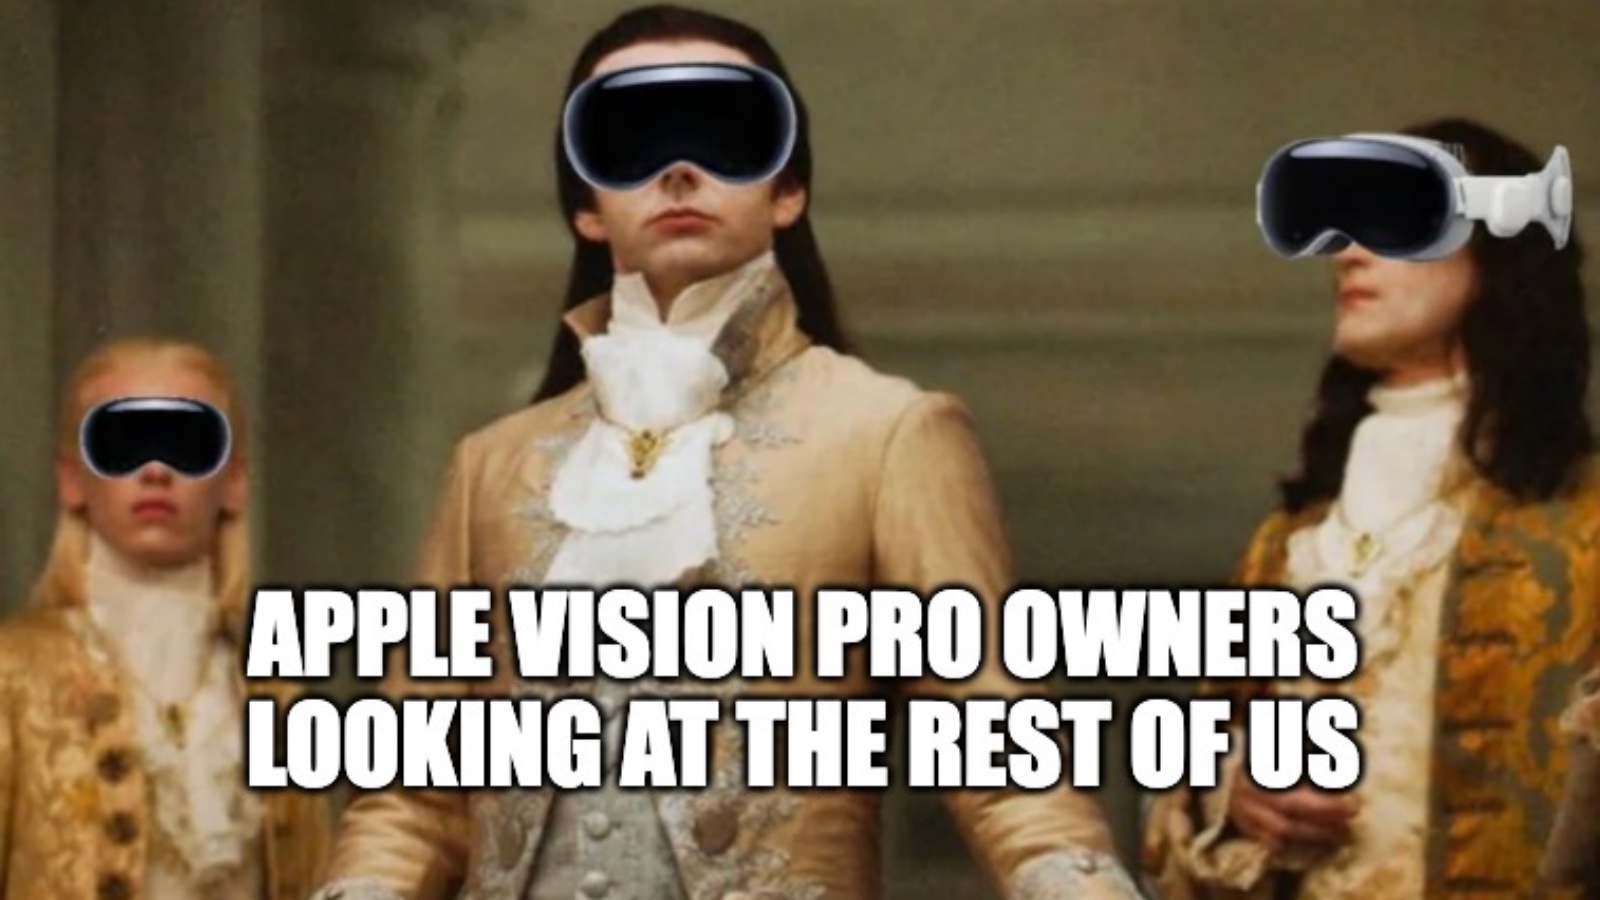 hilarious Apple Vision Pro meme